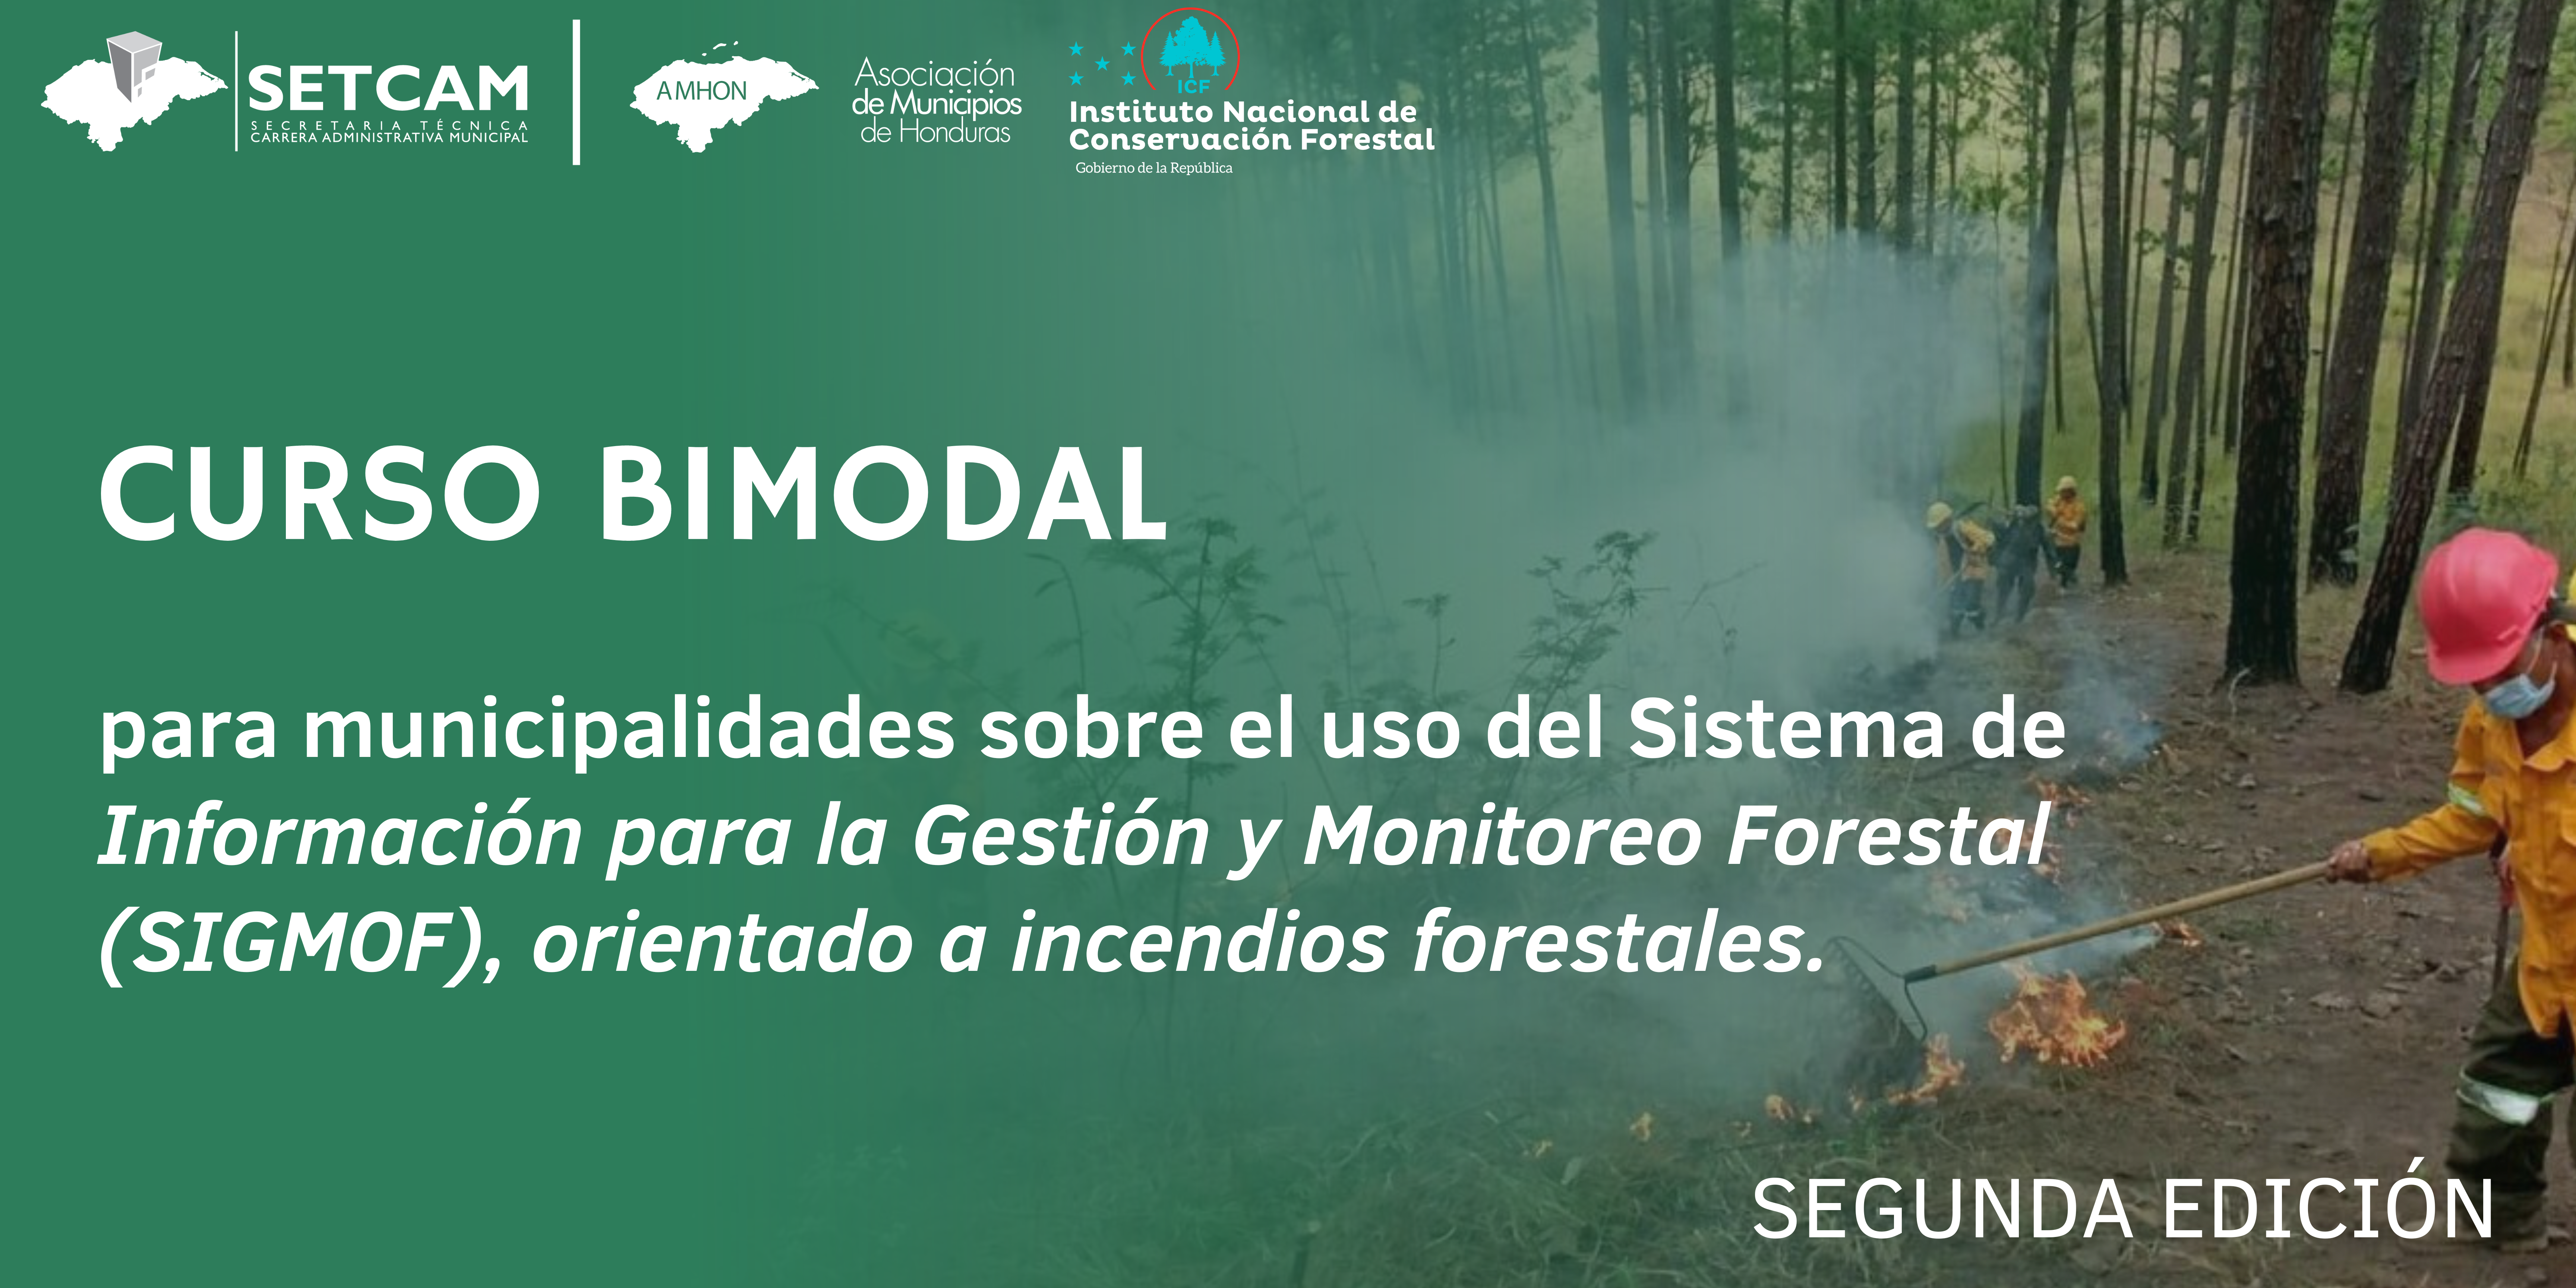 Sistema de Información para la Gestión y Monitoreo Forestal (SIGMOF), orientado a incendios forestales.